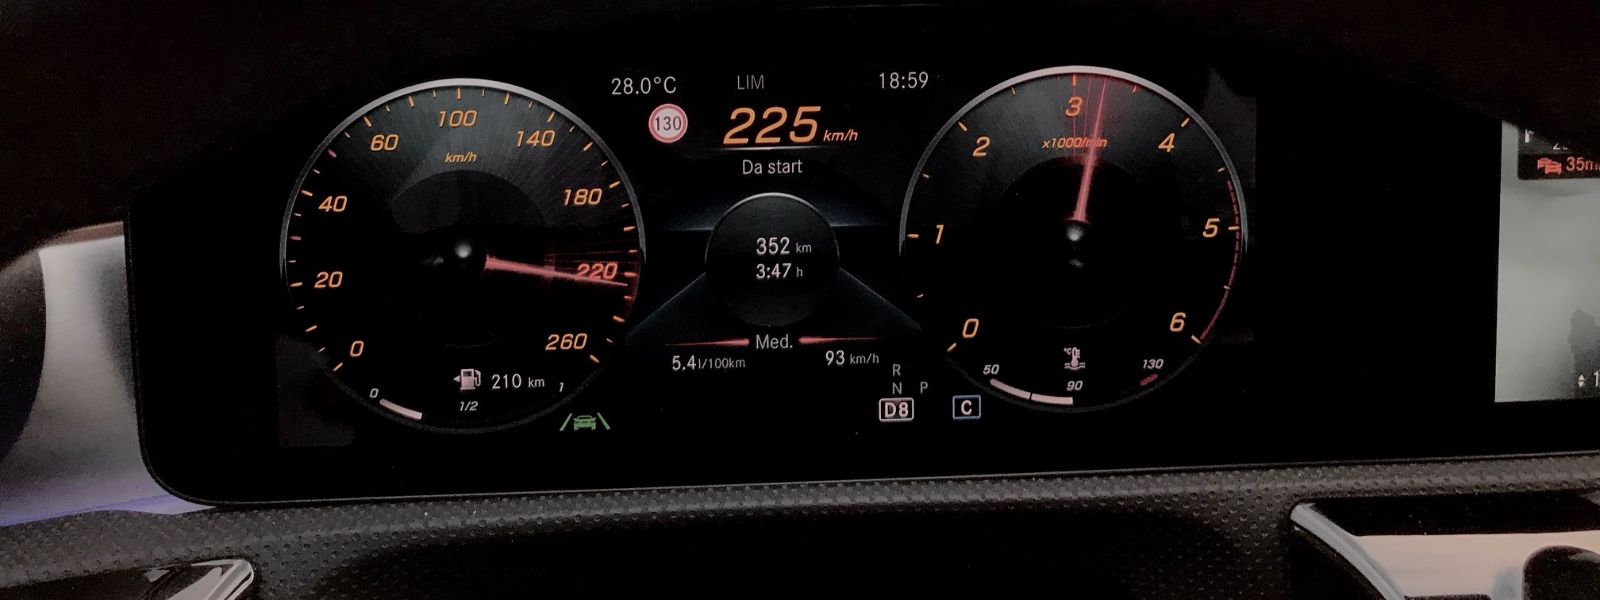 Mercedes CLA 200d velocità massima test prova consuma dopo 353 chilometri consumo a 5,4 litri ogni 100 chilometri